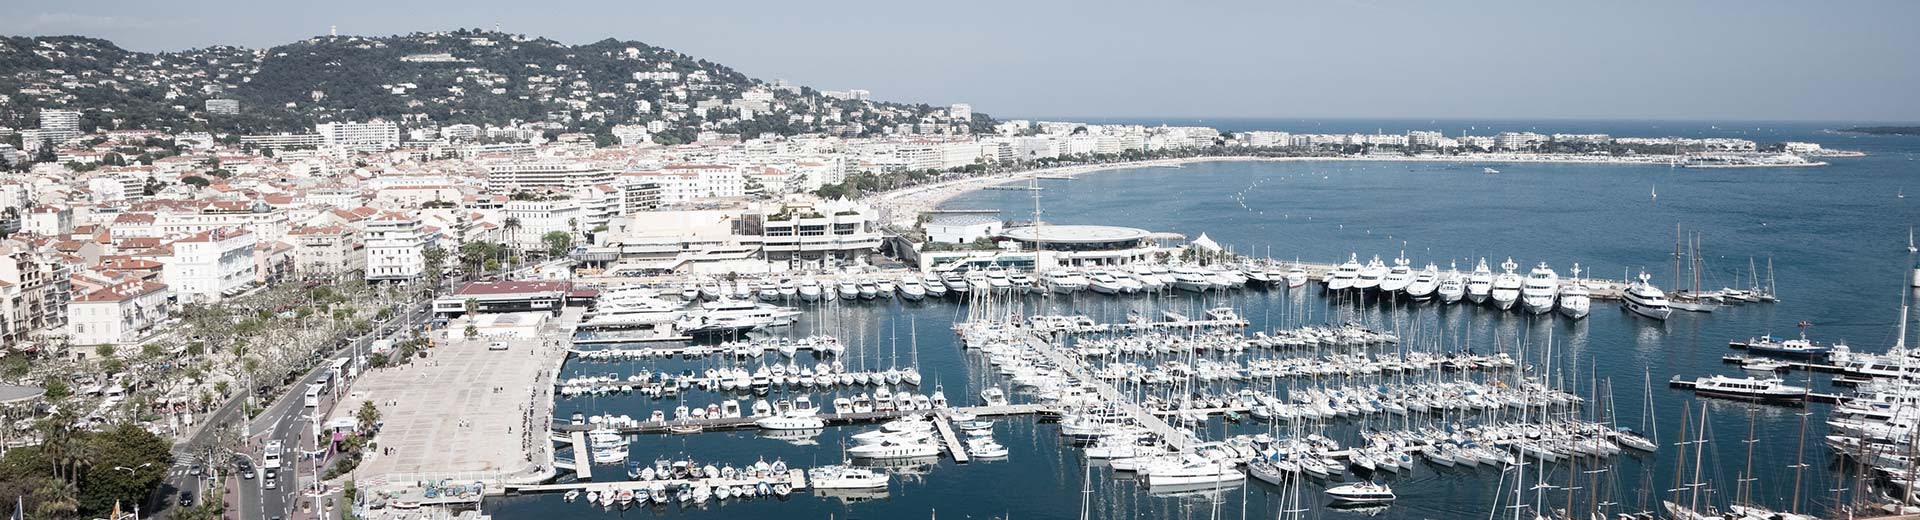 Weiße Boote und weiße Gebäude am Ufer an einem klaren und sonnigen Tag in Cannes.